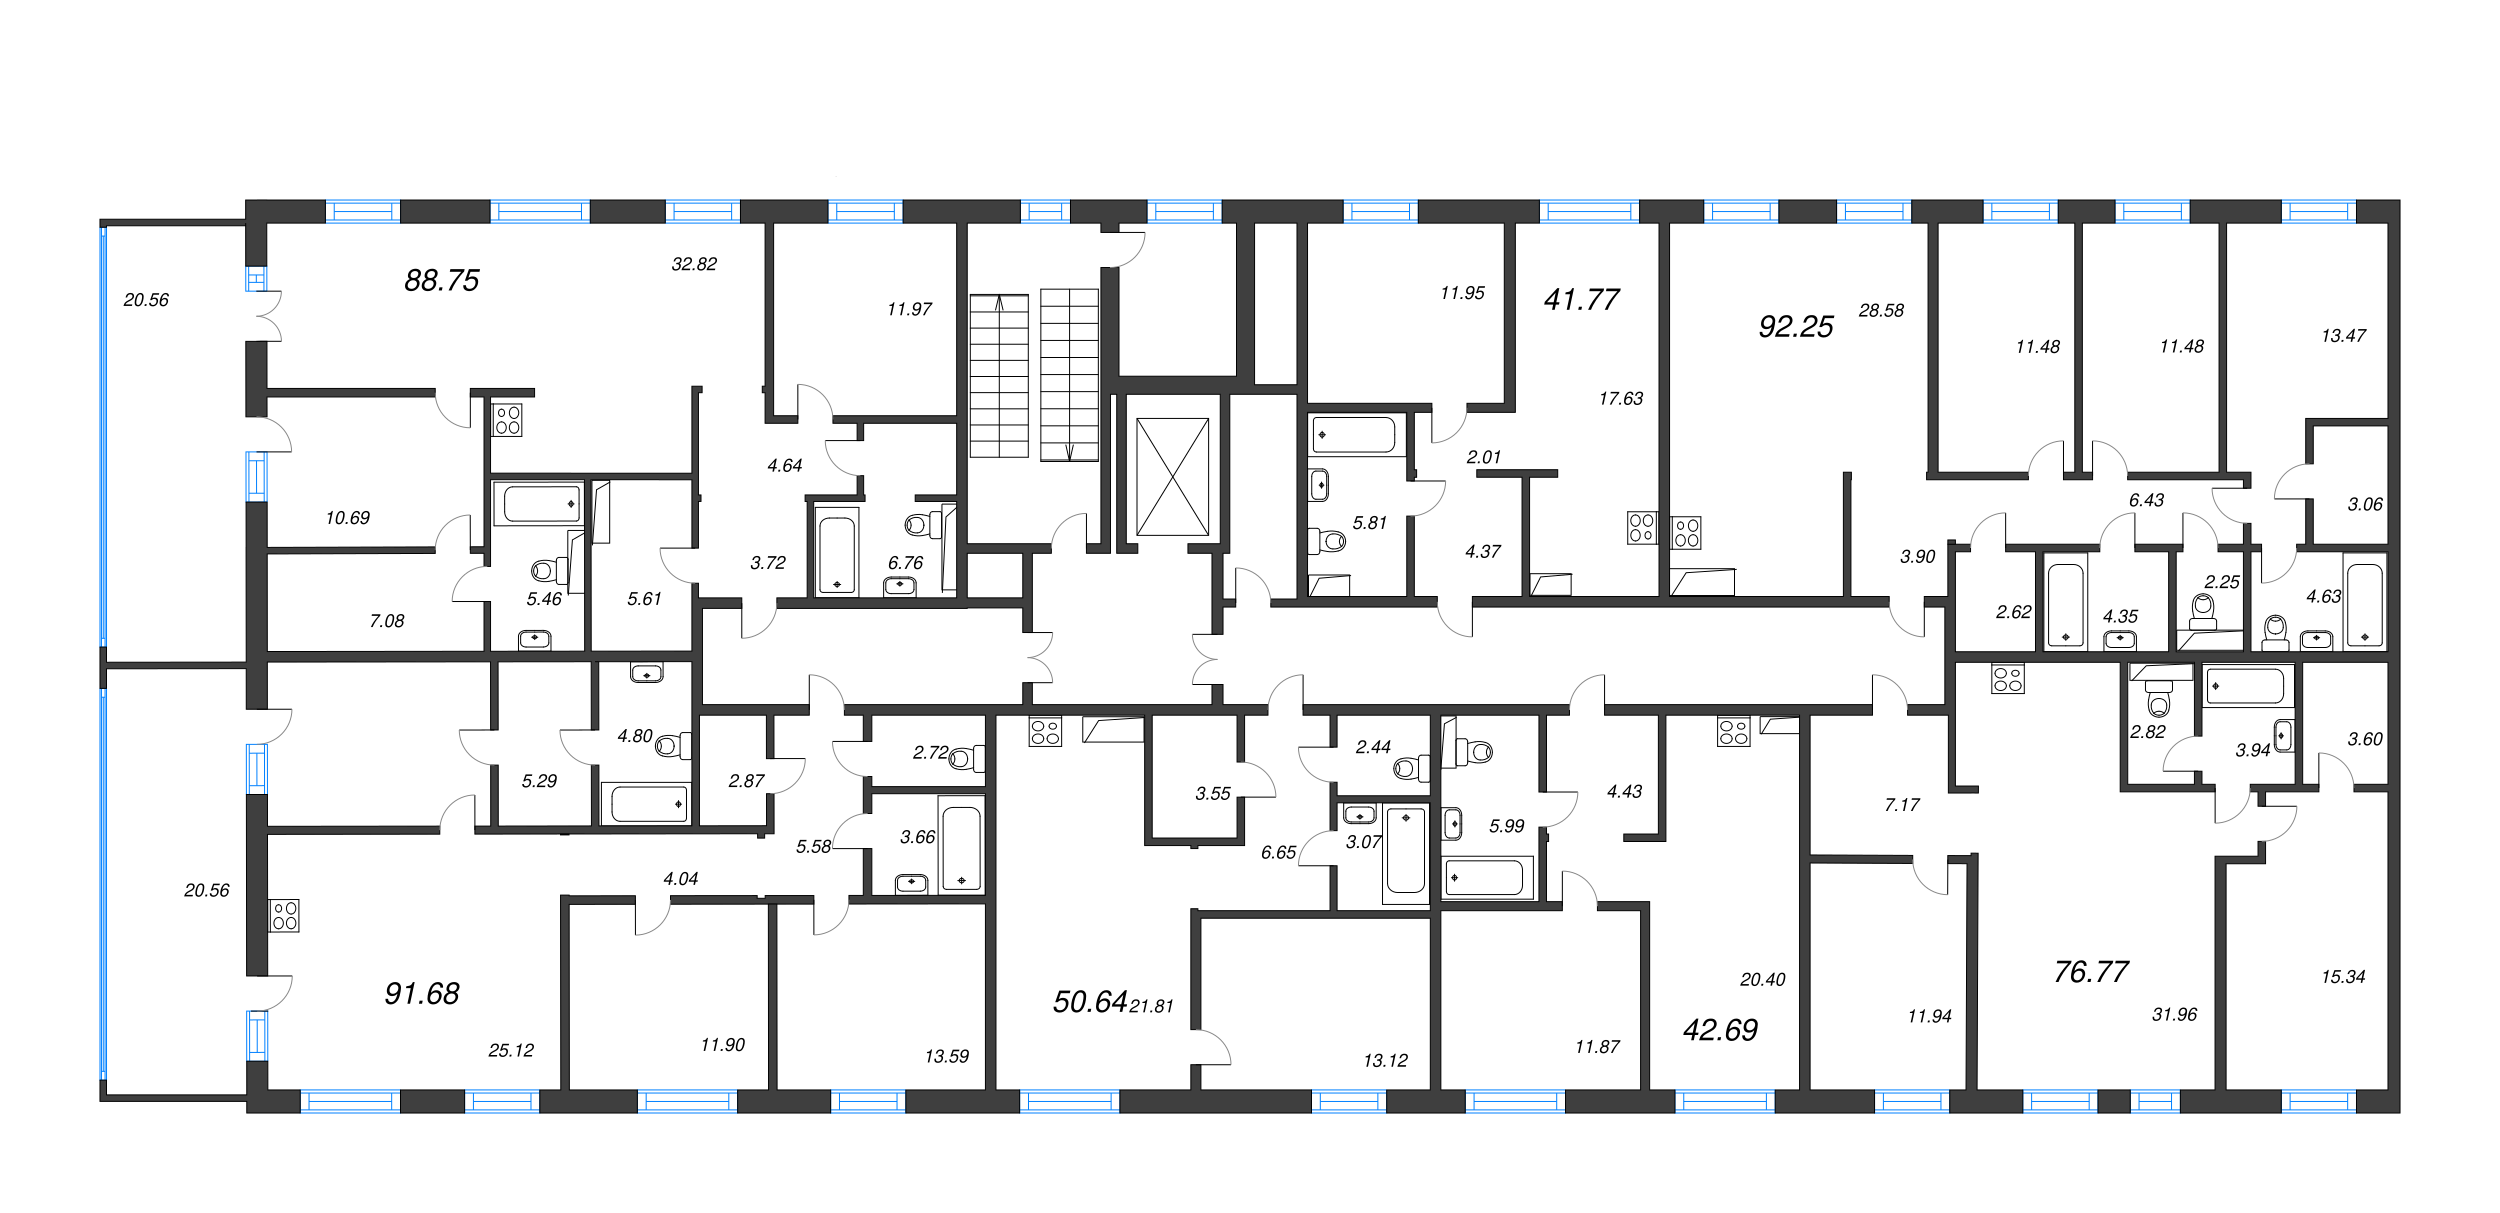 3-комнатная (Евро) квартира, 76.77 м² в ЖК "Черная речка, 41" - планировка этажа